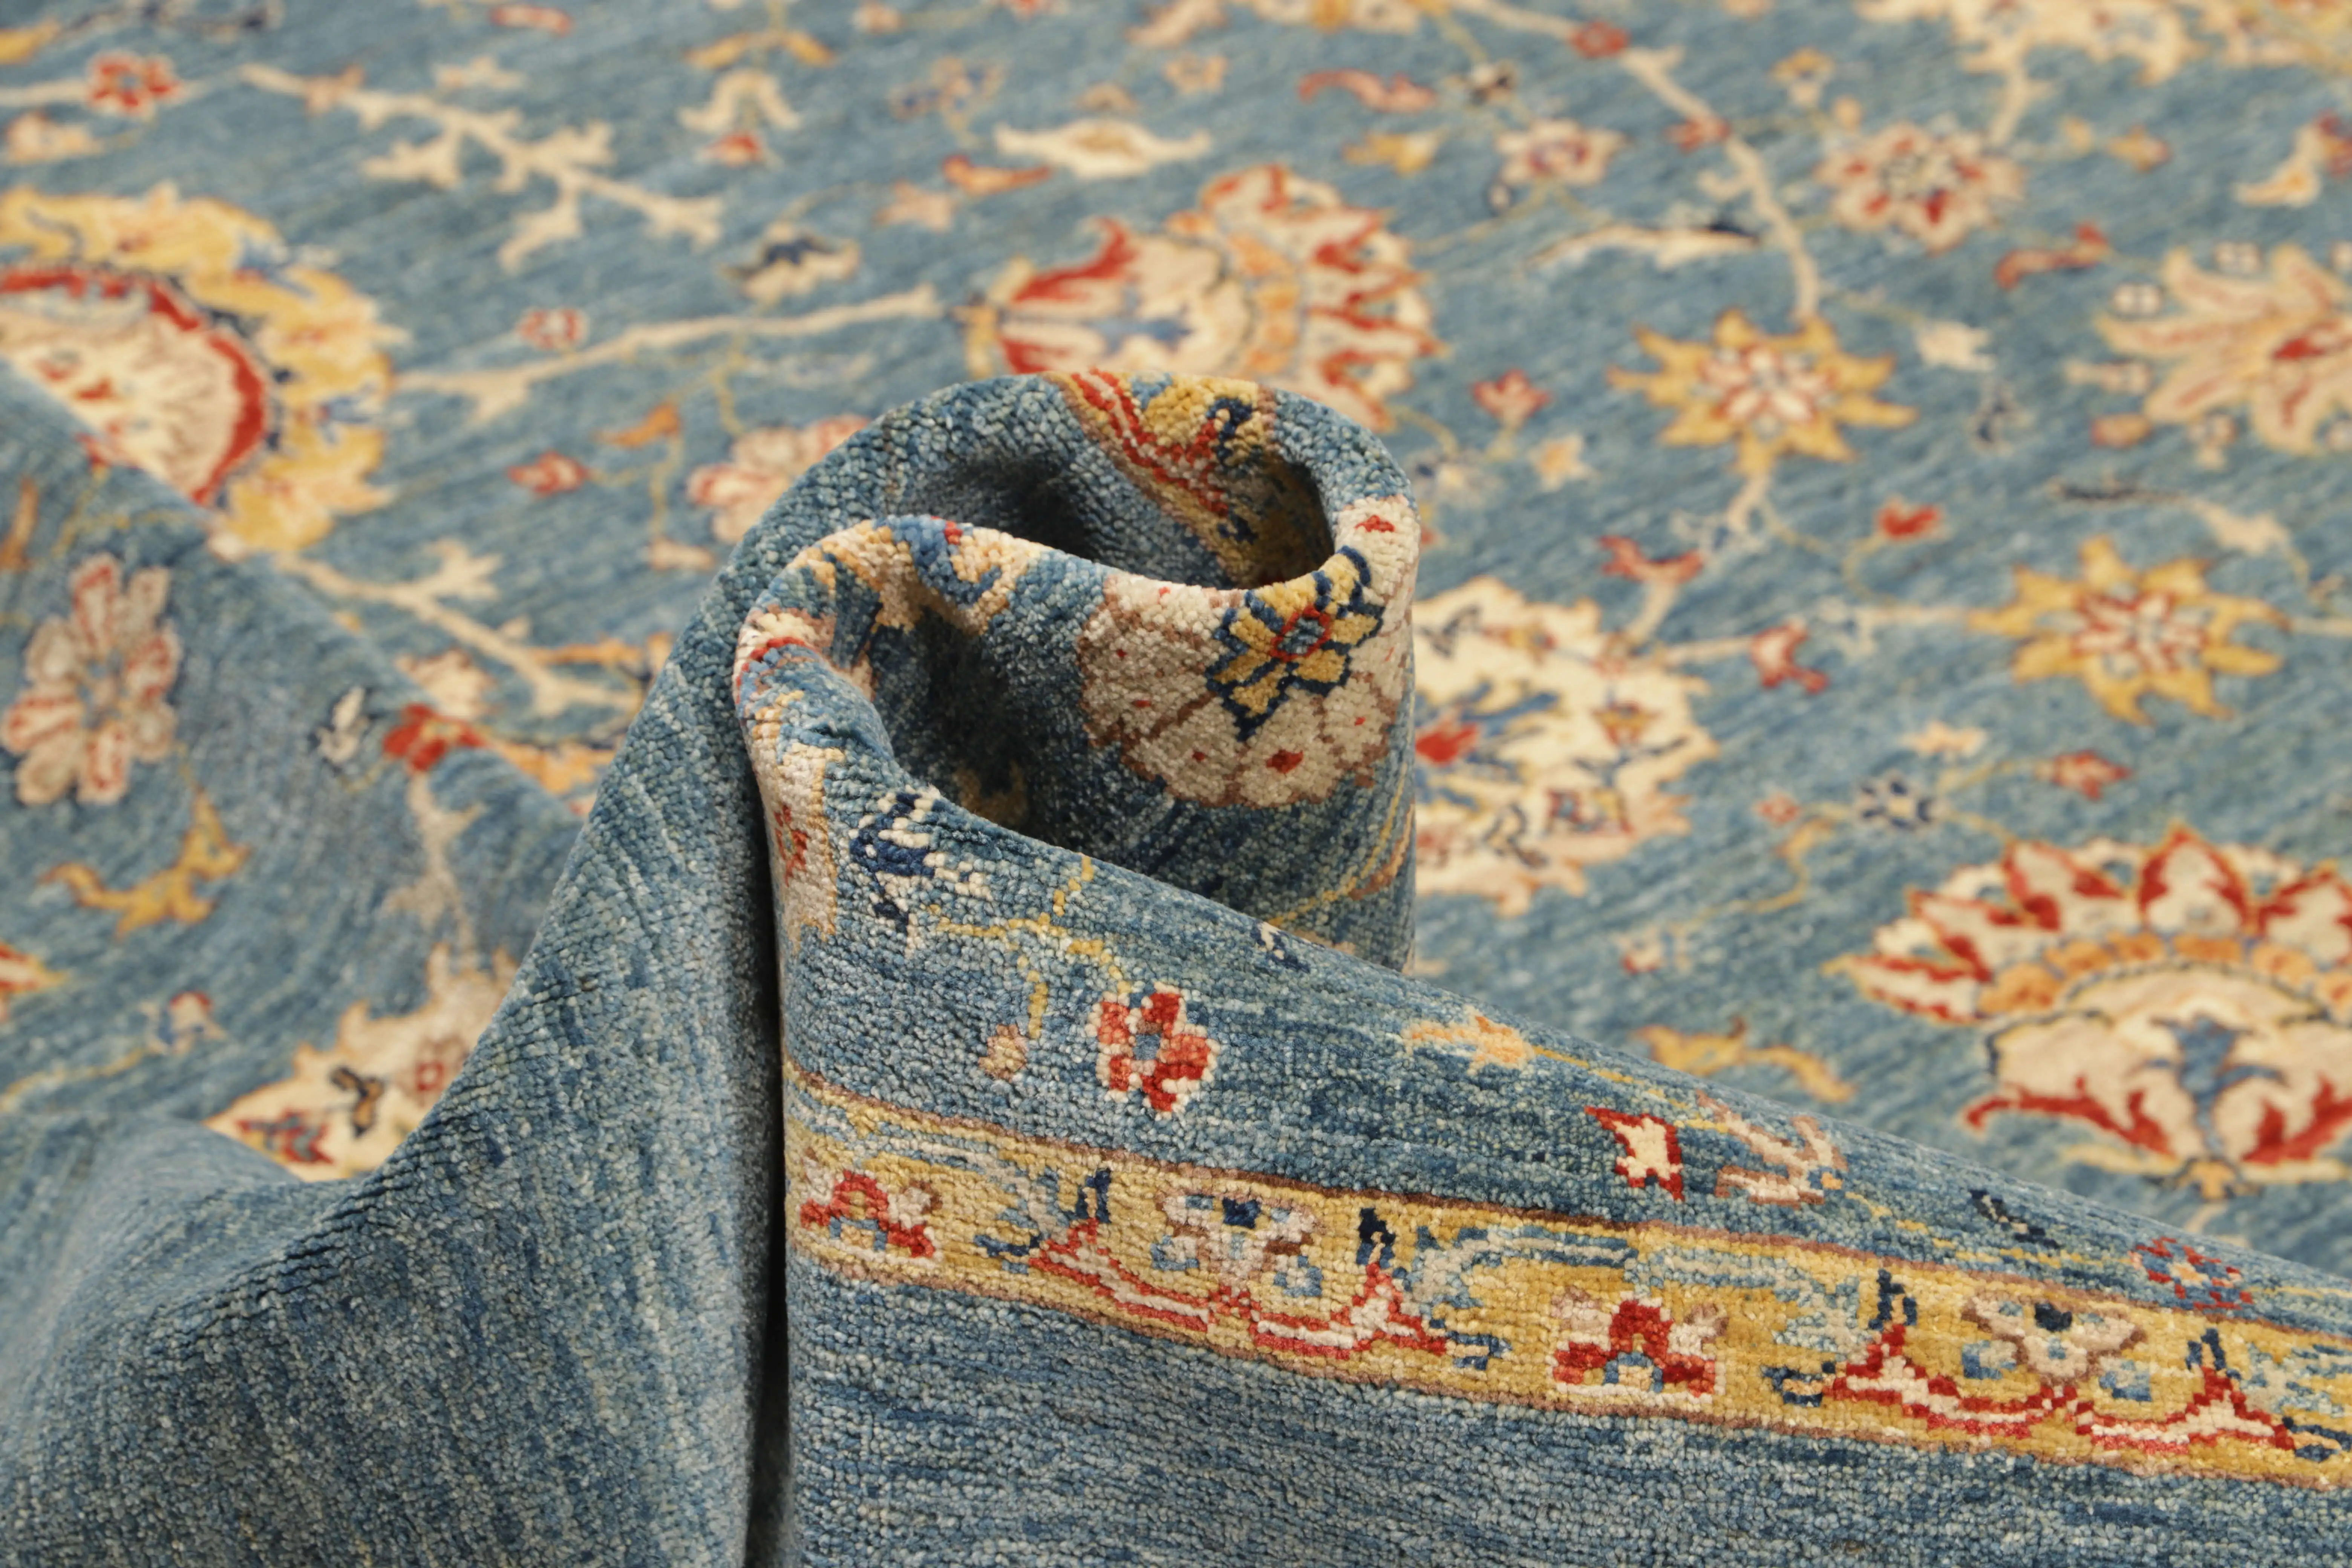 Teppich Ziegler 245 x 306 cm Orientteppich blau Handgeknüpft Schurwolle